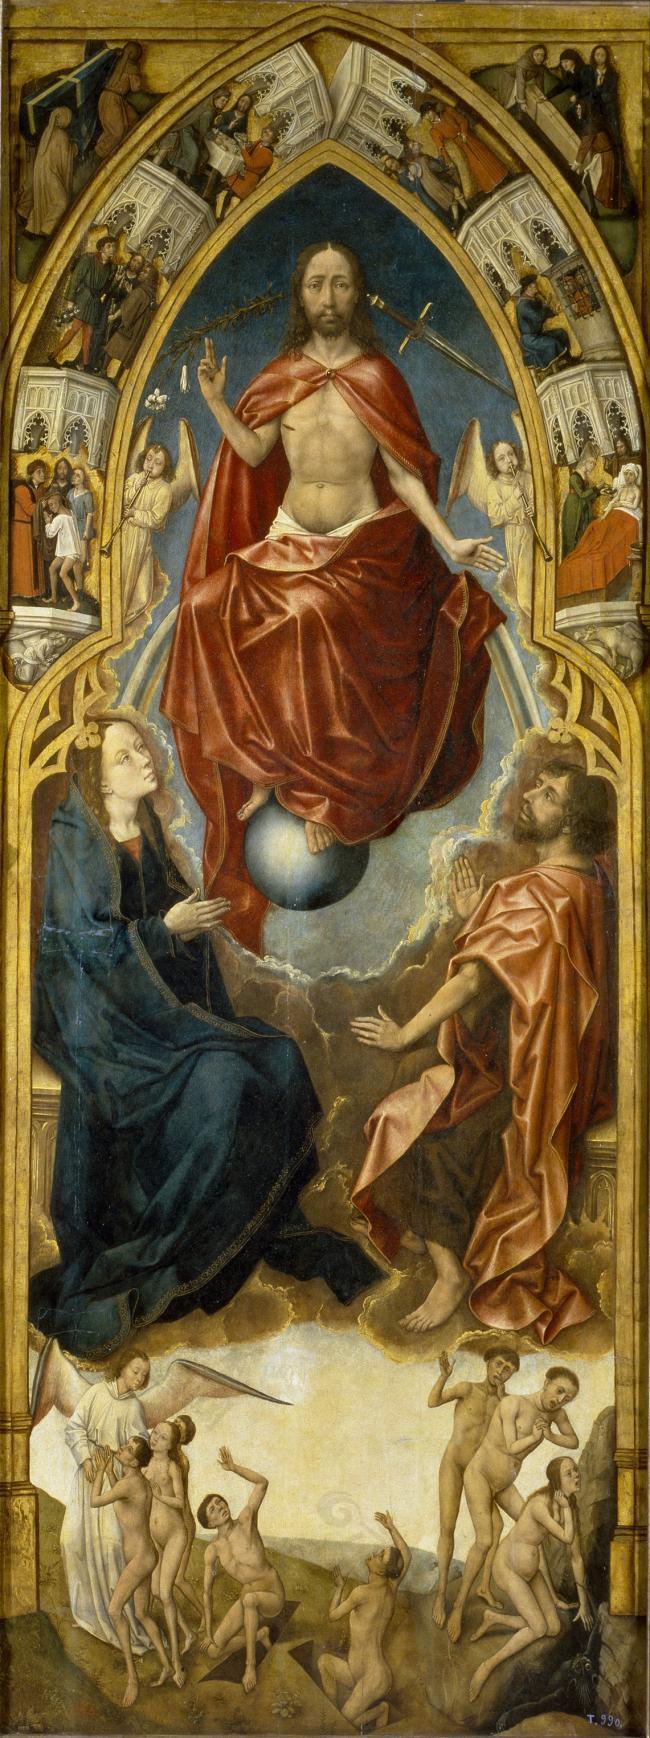 Stockt, Vrancke van der - Redemption Triptych Last Judgement, Second Half of the 15 Century大师画家动物油画飞